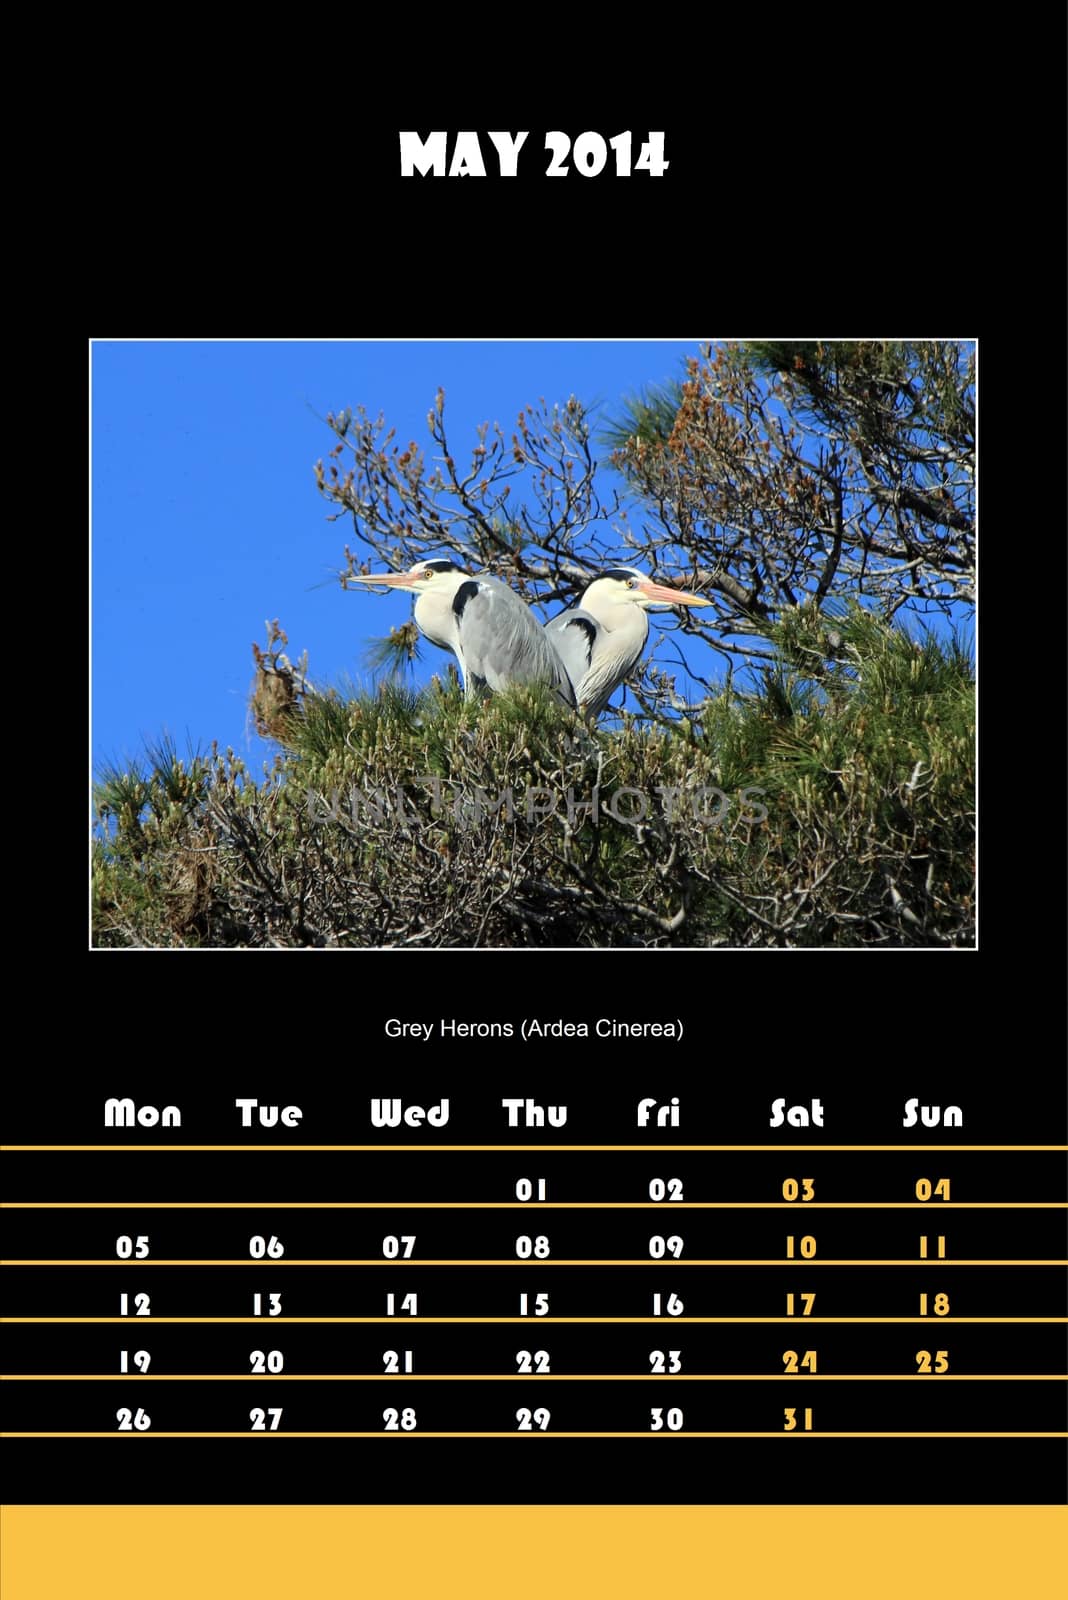 Bird calendar for 2014 - may by Elenaphotos21